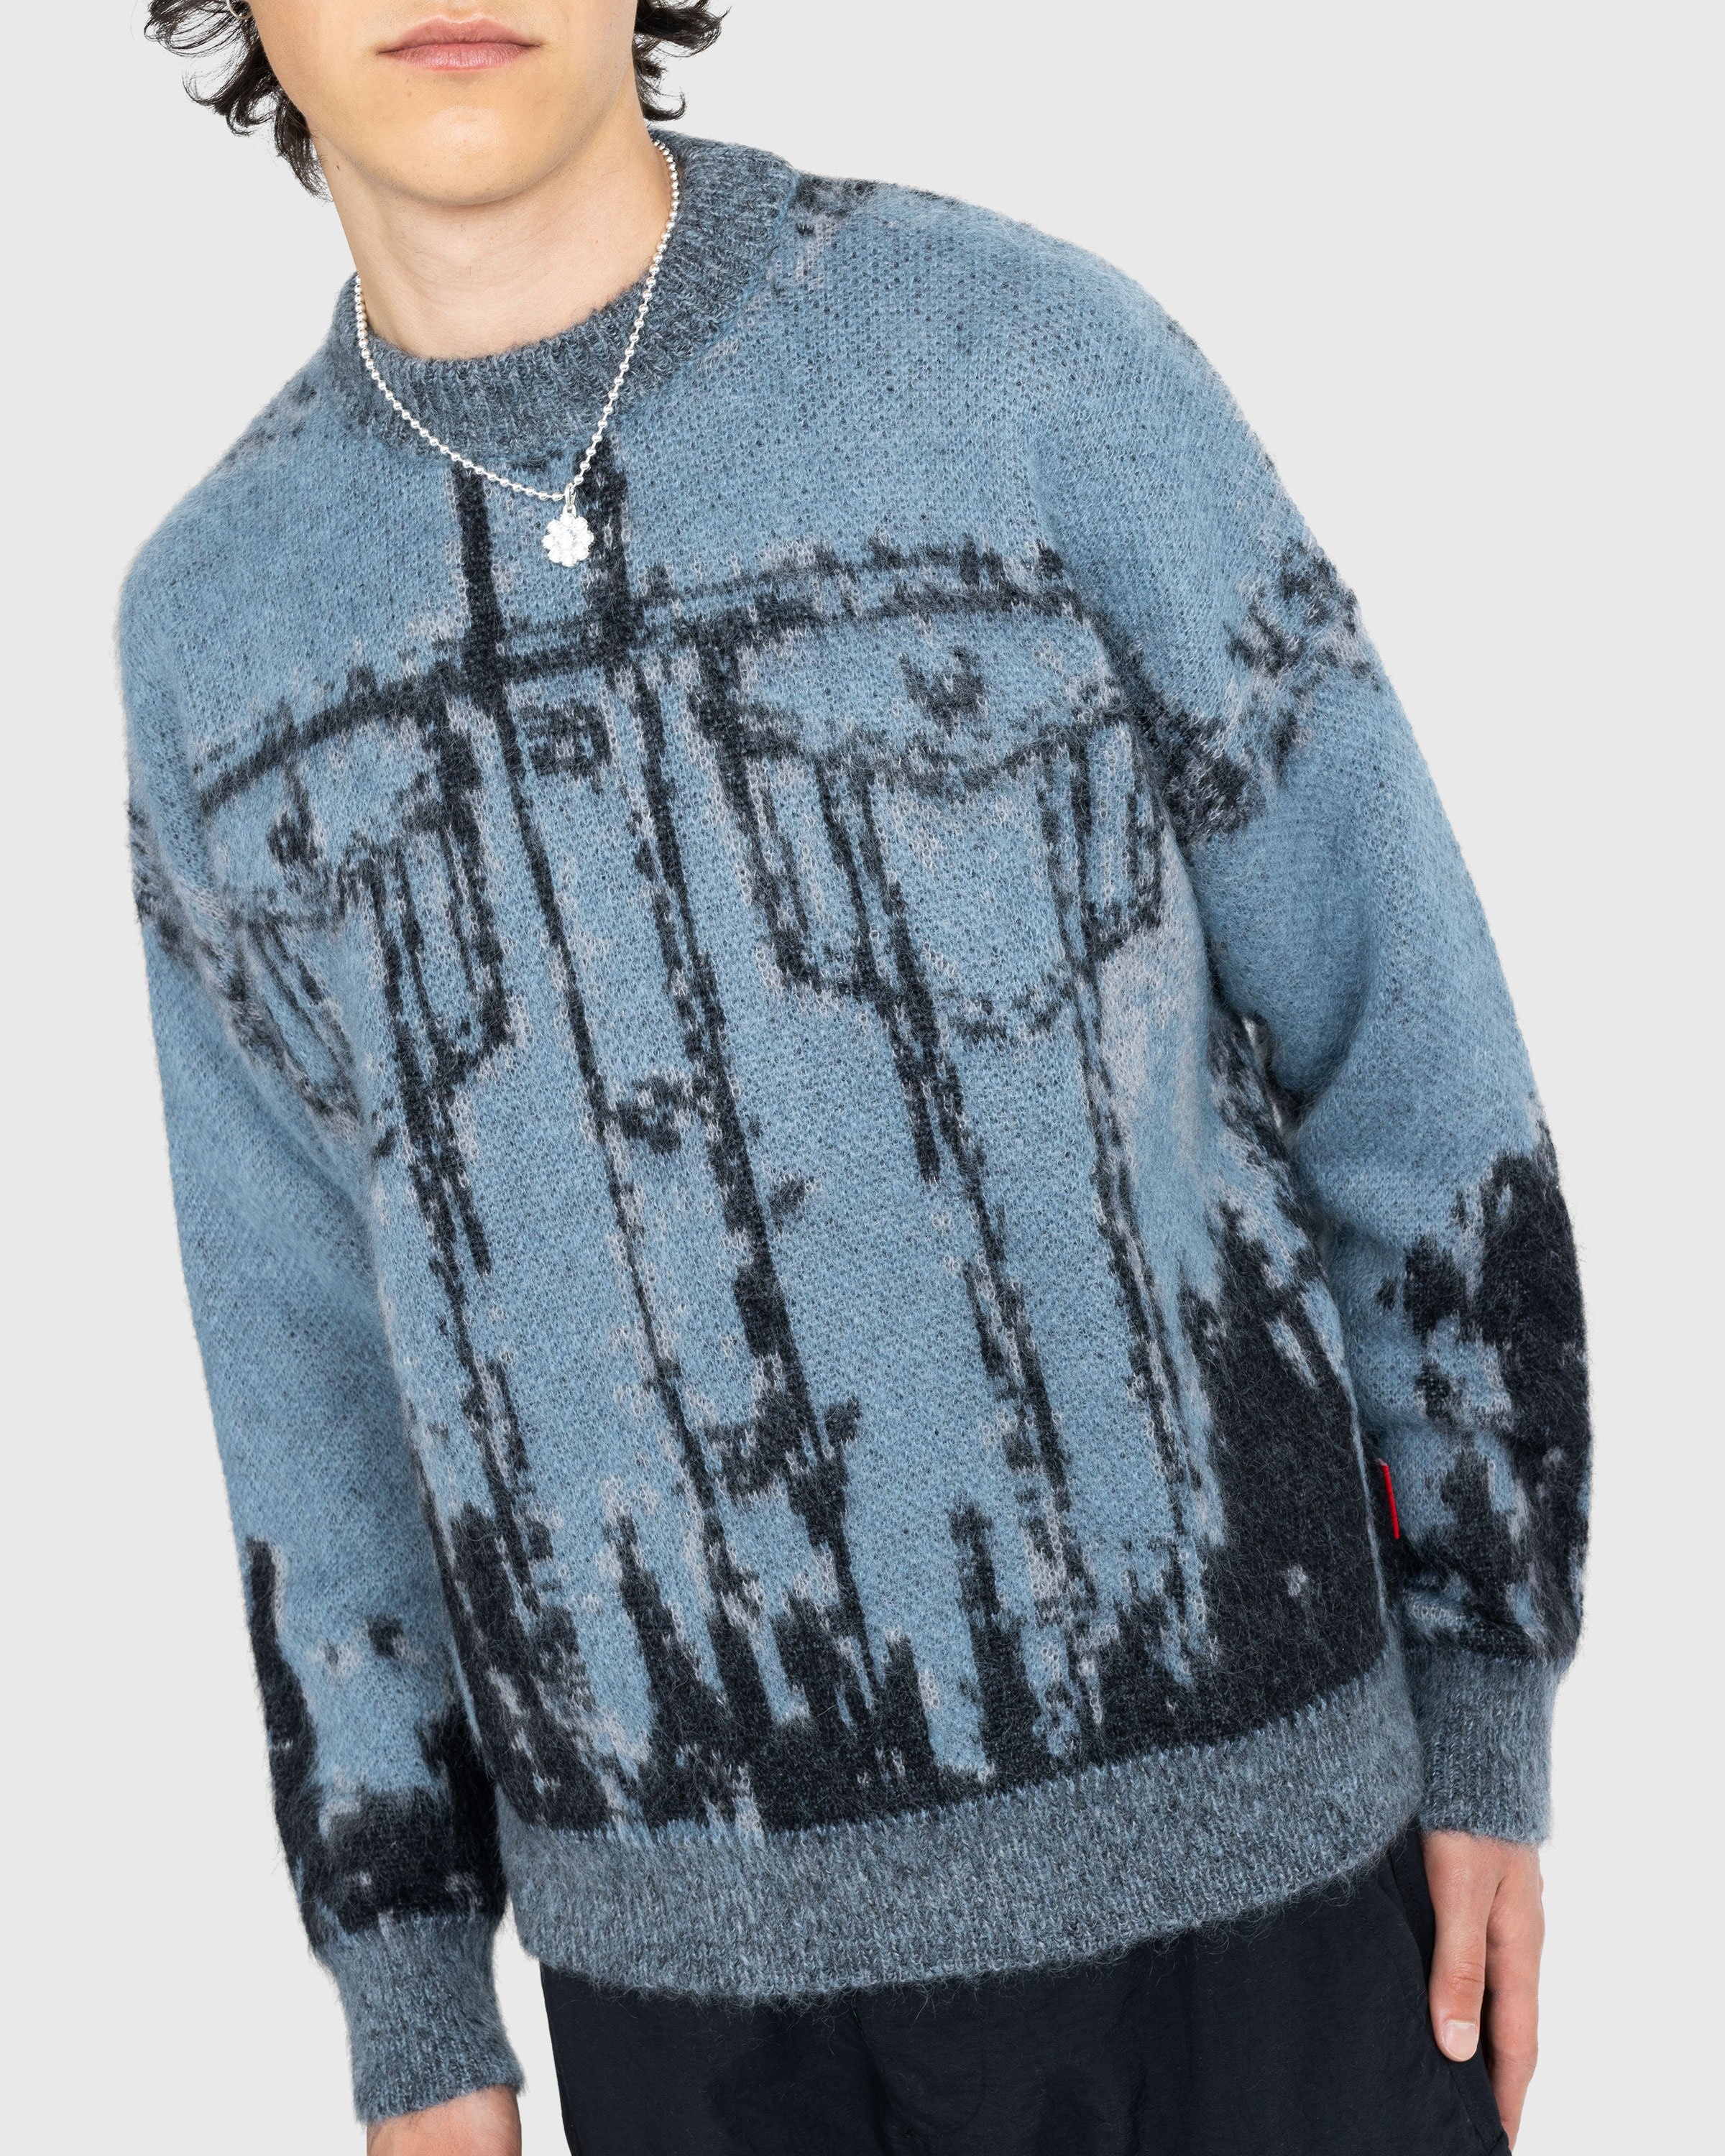 Diesel – K-Patmos Knit Sweater Blue - Knitwear - Blue - Image 4